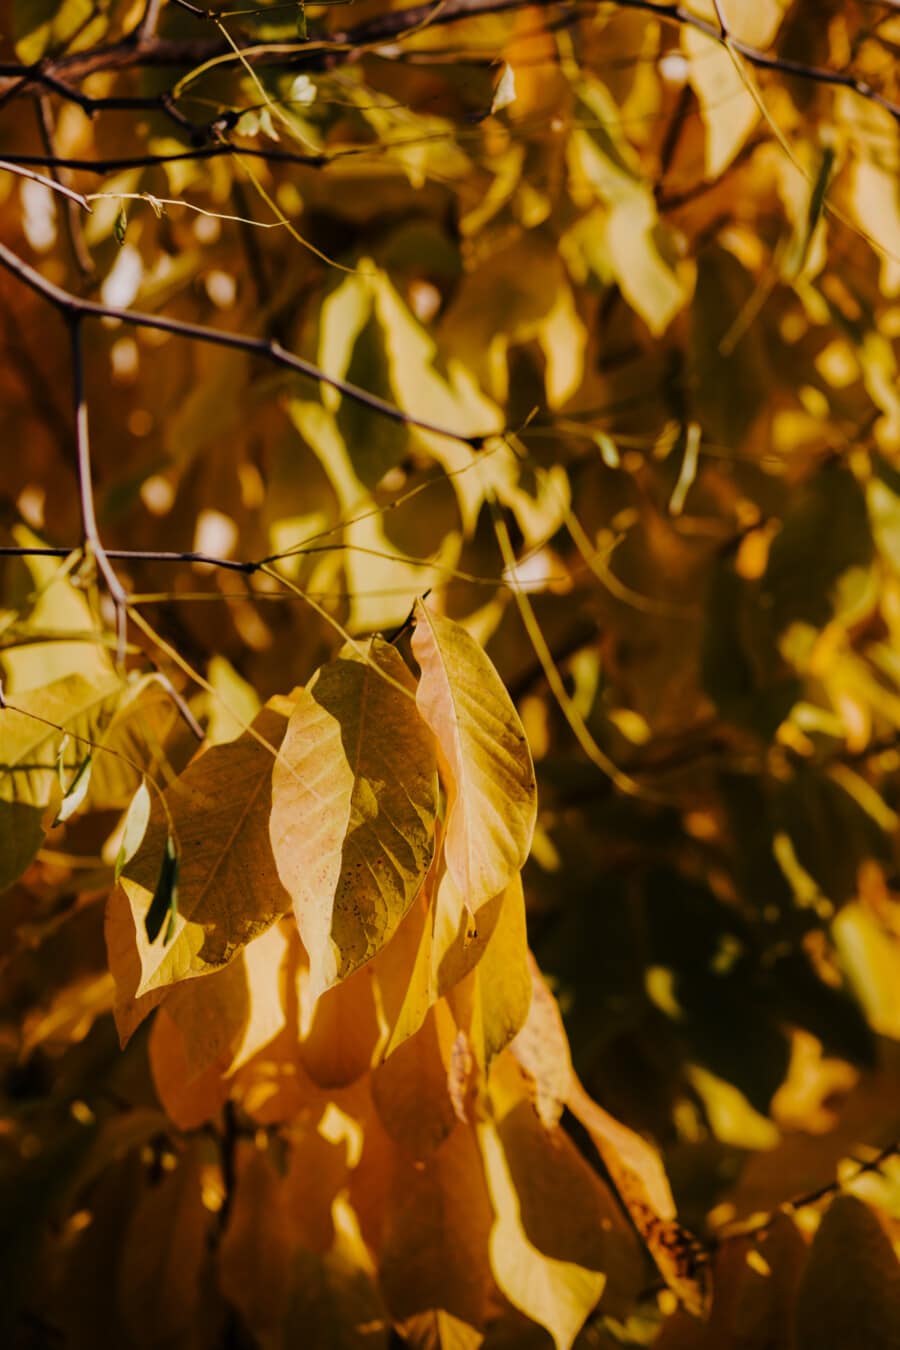 κιτρινωπό, κίτρινα φύλλα, κιτρινωπό καφέ, φύλλο, οπωρωφόρο δέντρο, υποκαταστήματα, φύλλα, κίτρινο, φύση, δέντρο